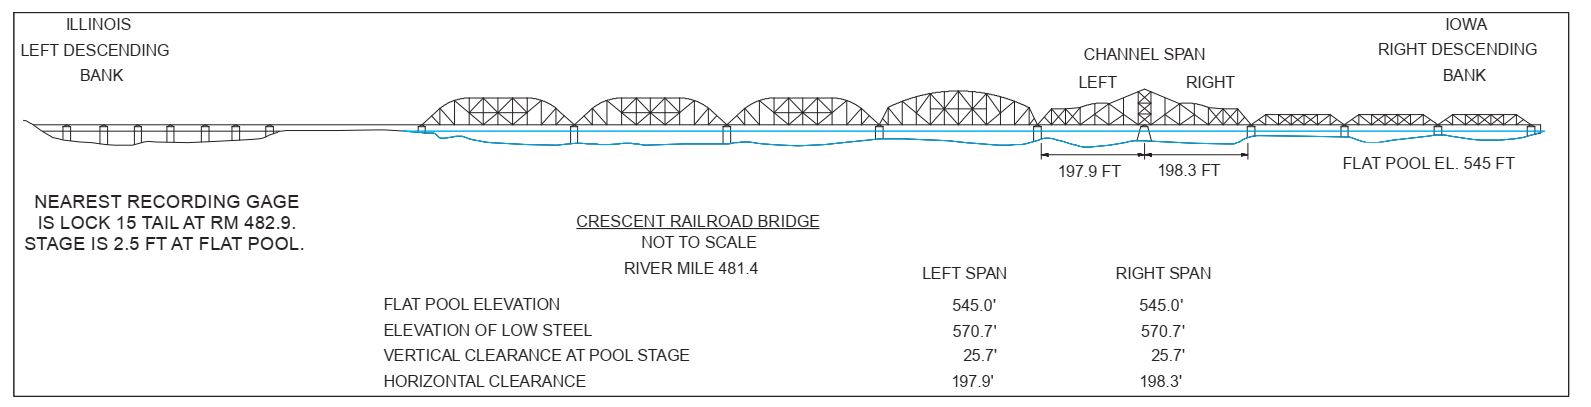 Crescent Railroad Bridge - Closed Clearances | Bridge Calculator LLC